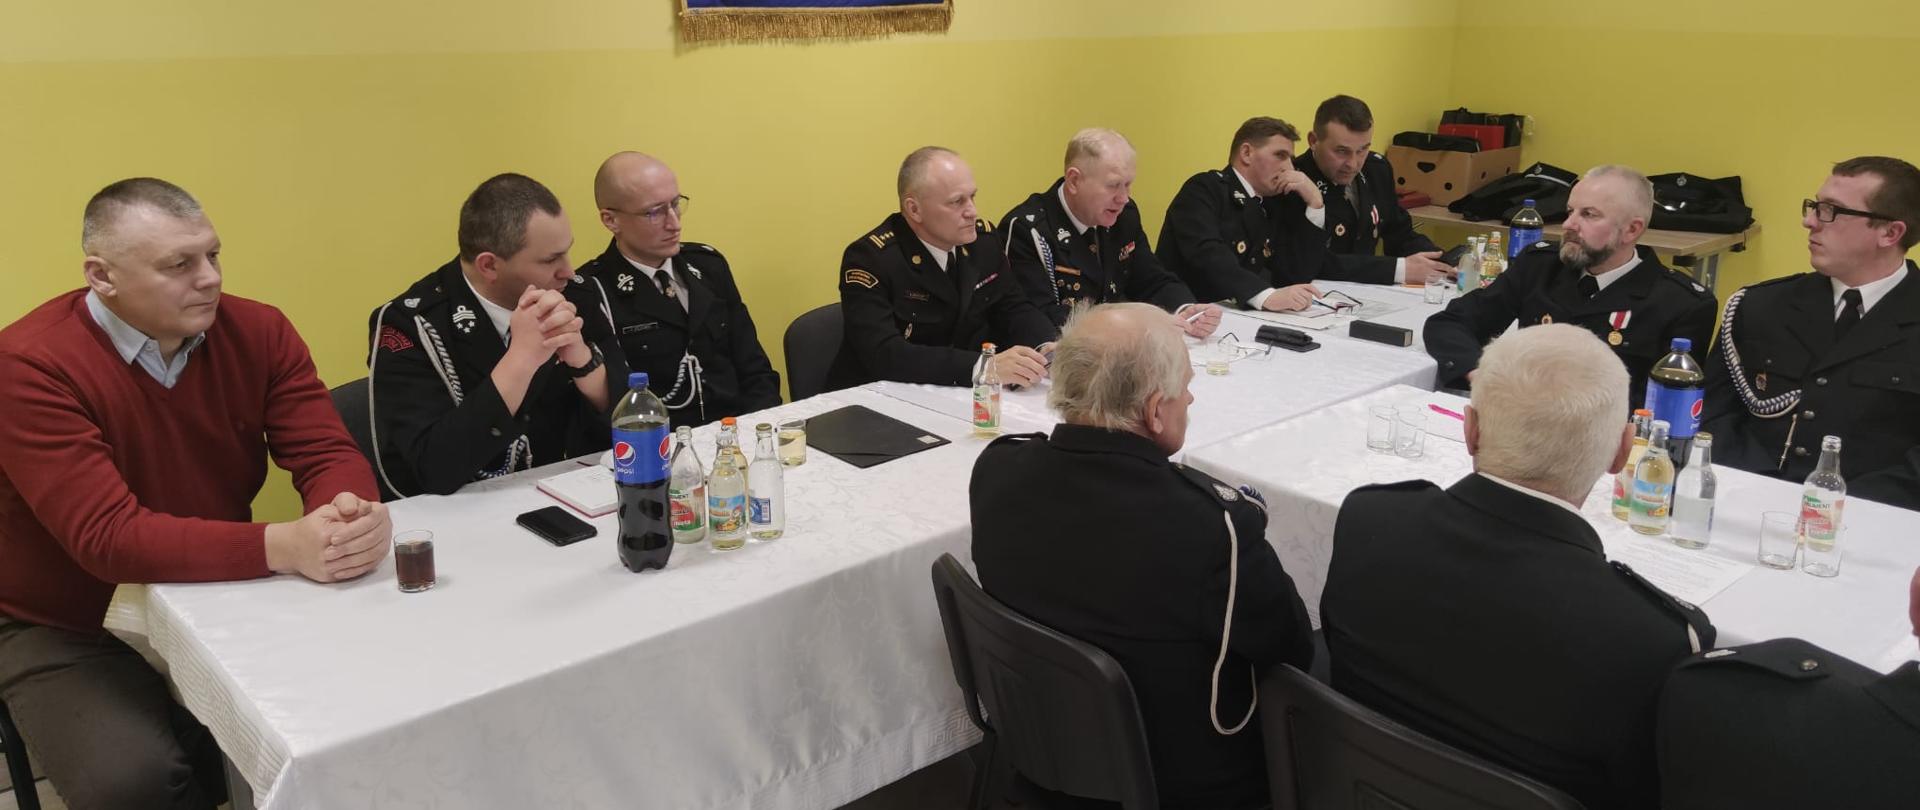 Na zdjęciu widać druhów OSP w mundurach strażackich siedzących przy stole w remizie OSP Garbacz. Przy stole siedzą również Komendant Powiatowy PSP w Ostrowcu Św, oraz Wójt Gminy Waśniów.